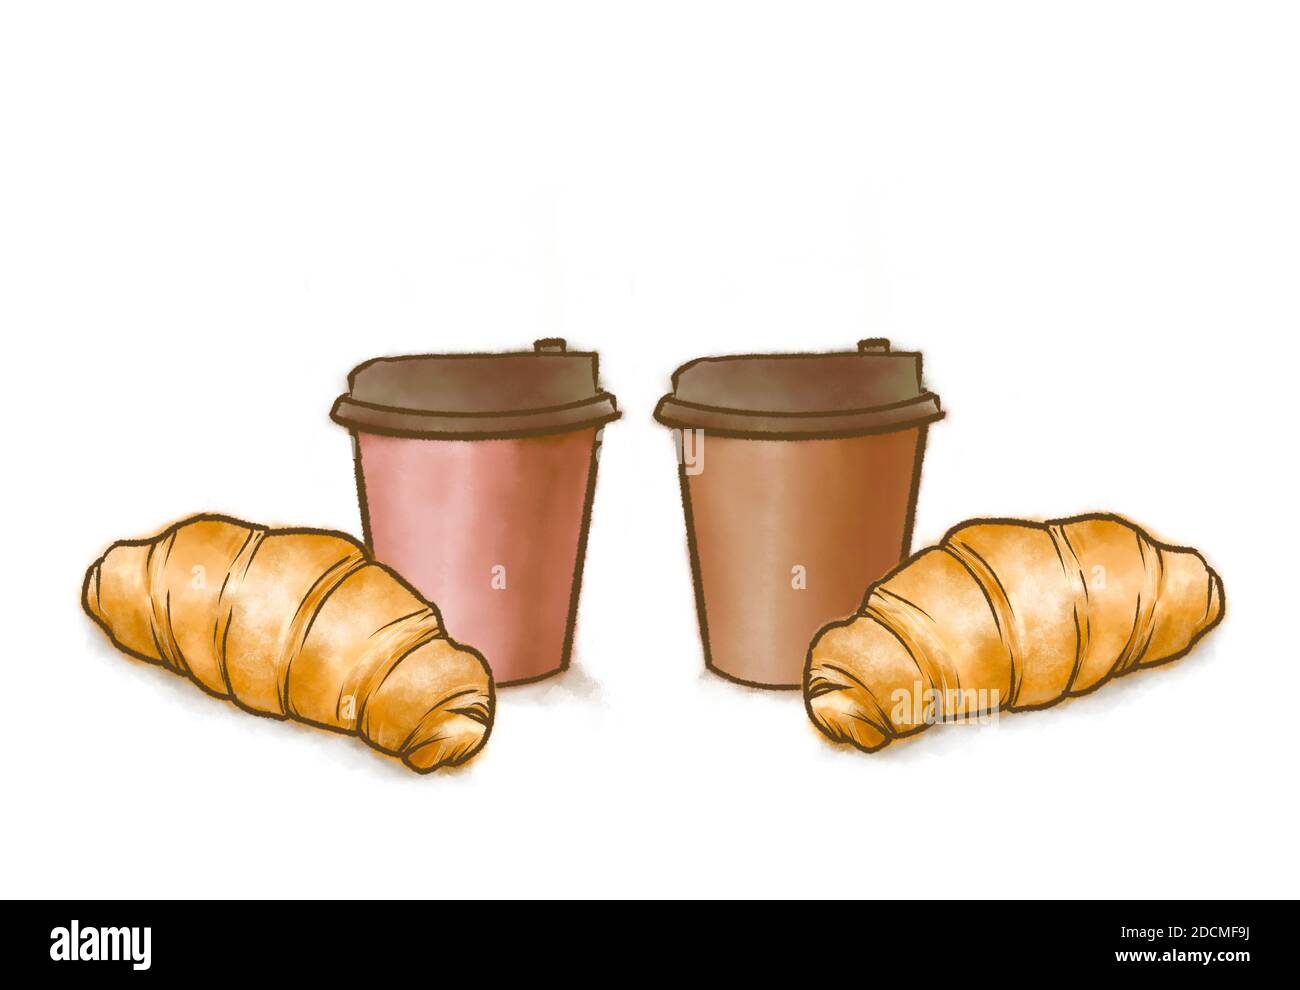 La peinture numérique de la boulangerie française de pain croissant et de café papier tasse image raster sur fond blanc. Banque D'Images